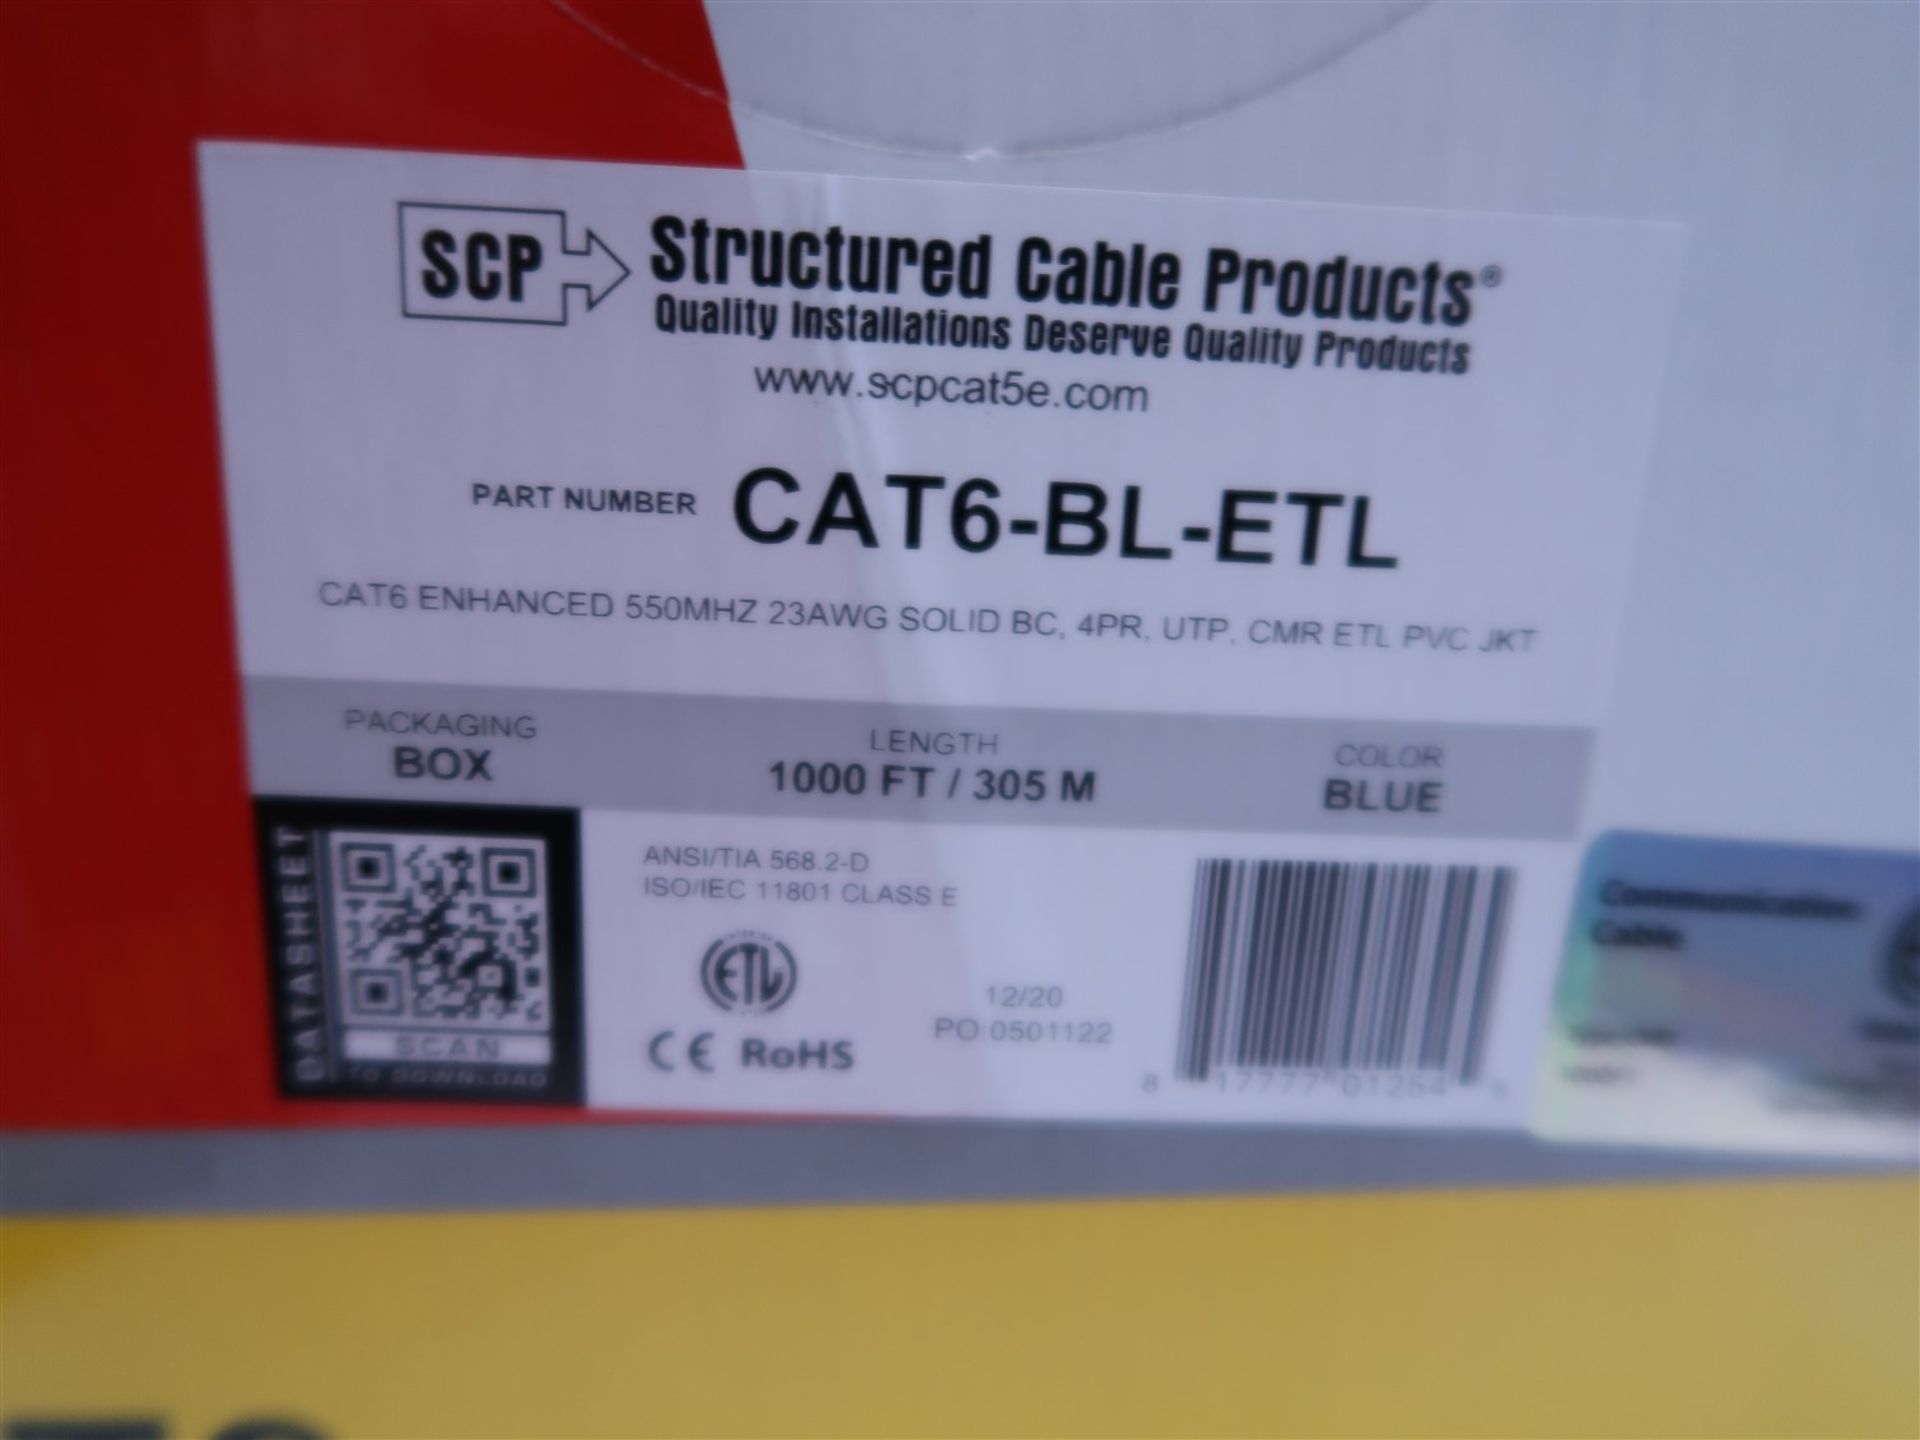 BOX OF SCP CAT 6-BK-ETL ENHANCED 550 MHZ 23 AWG SOLID BC, 4PR, UTP CMR ETL PVC JKT 1000 FT. BLACK - Image 2 of 2